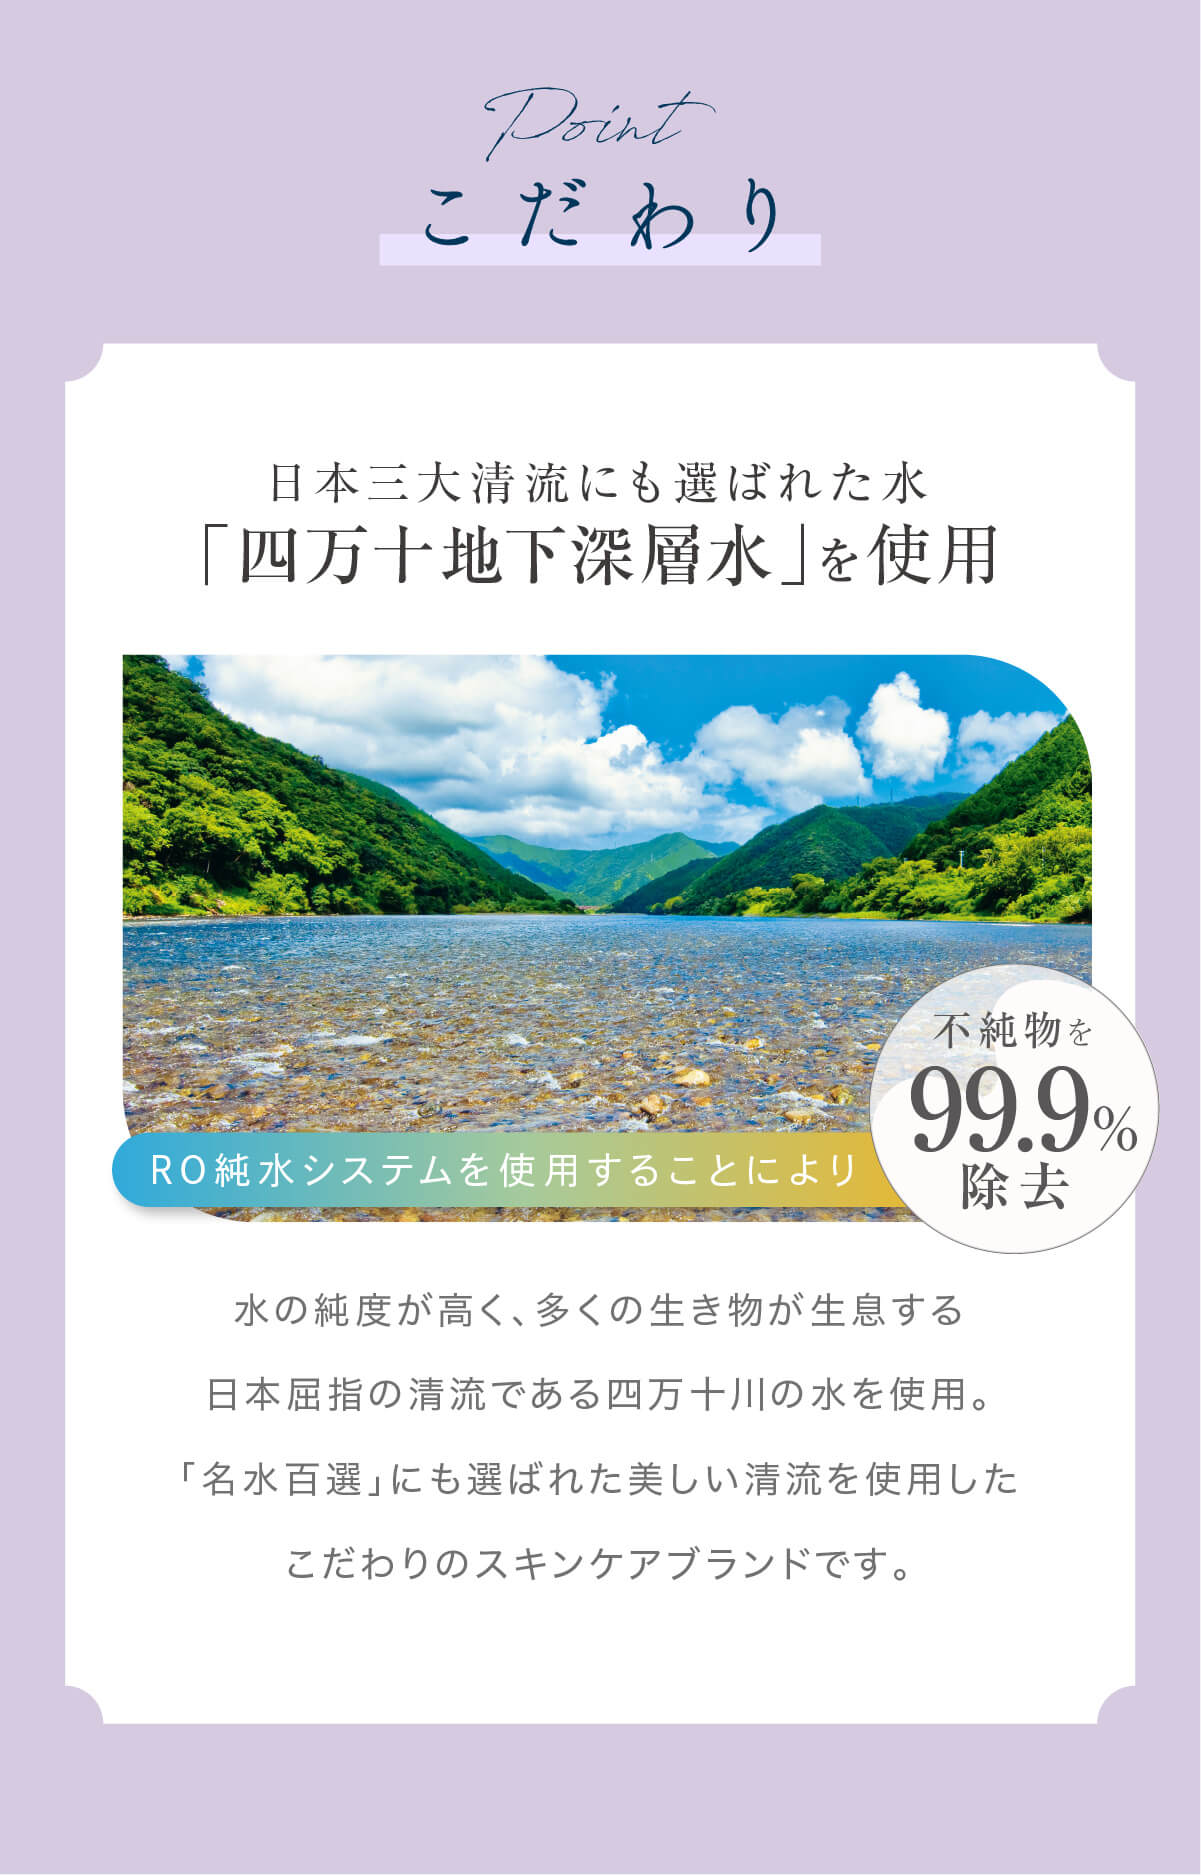 水の純度が高く、多くの生き物が生息する日本屈指の清流である四万十川の水を使用。「名水百選」にも選ばれた美しい清流を使用したこだわりのスキンケアブランドです。